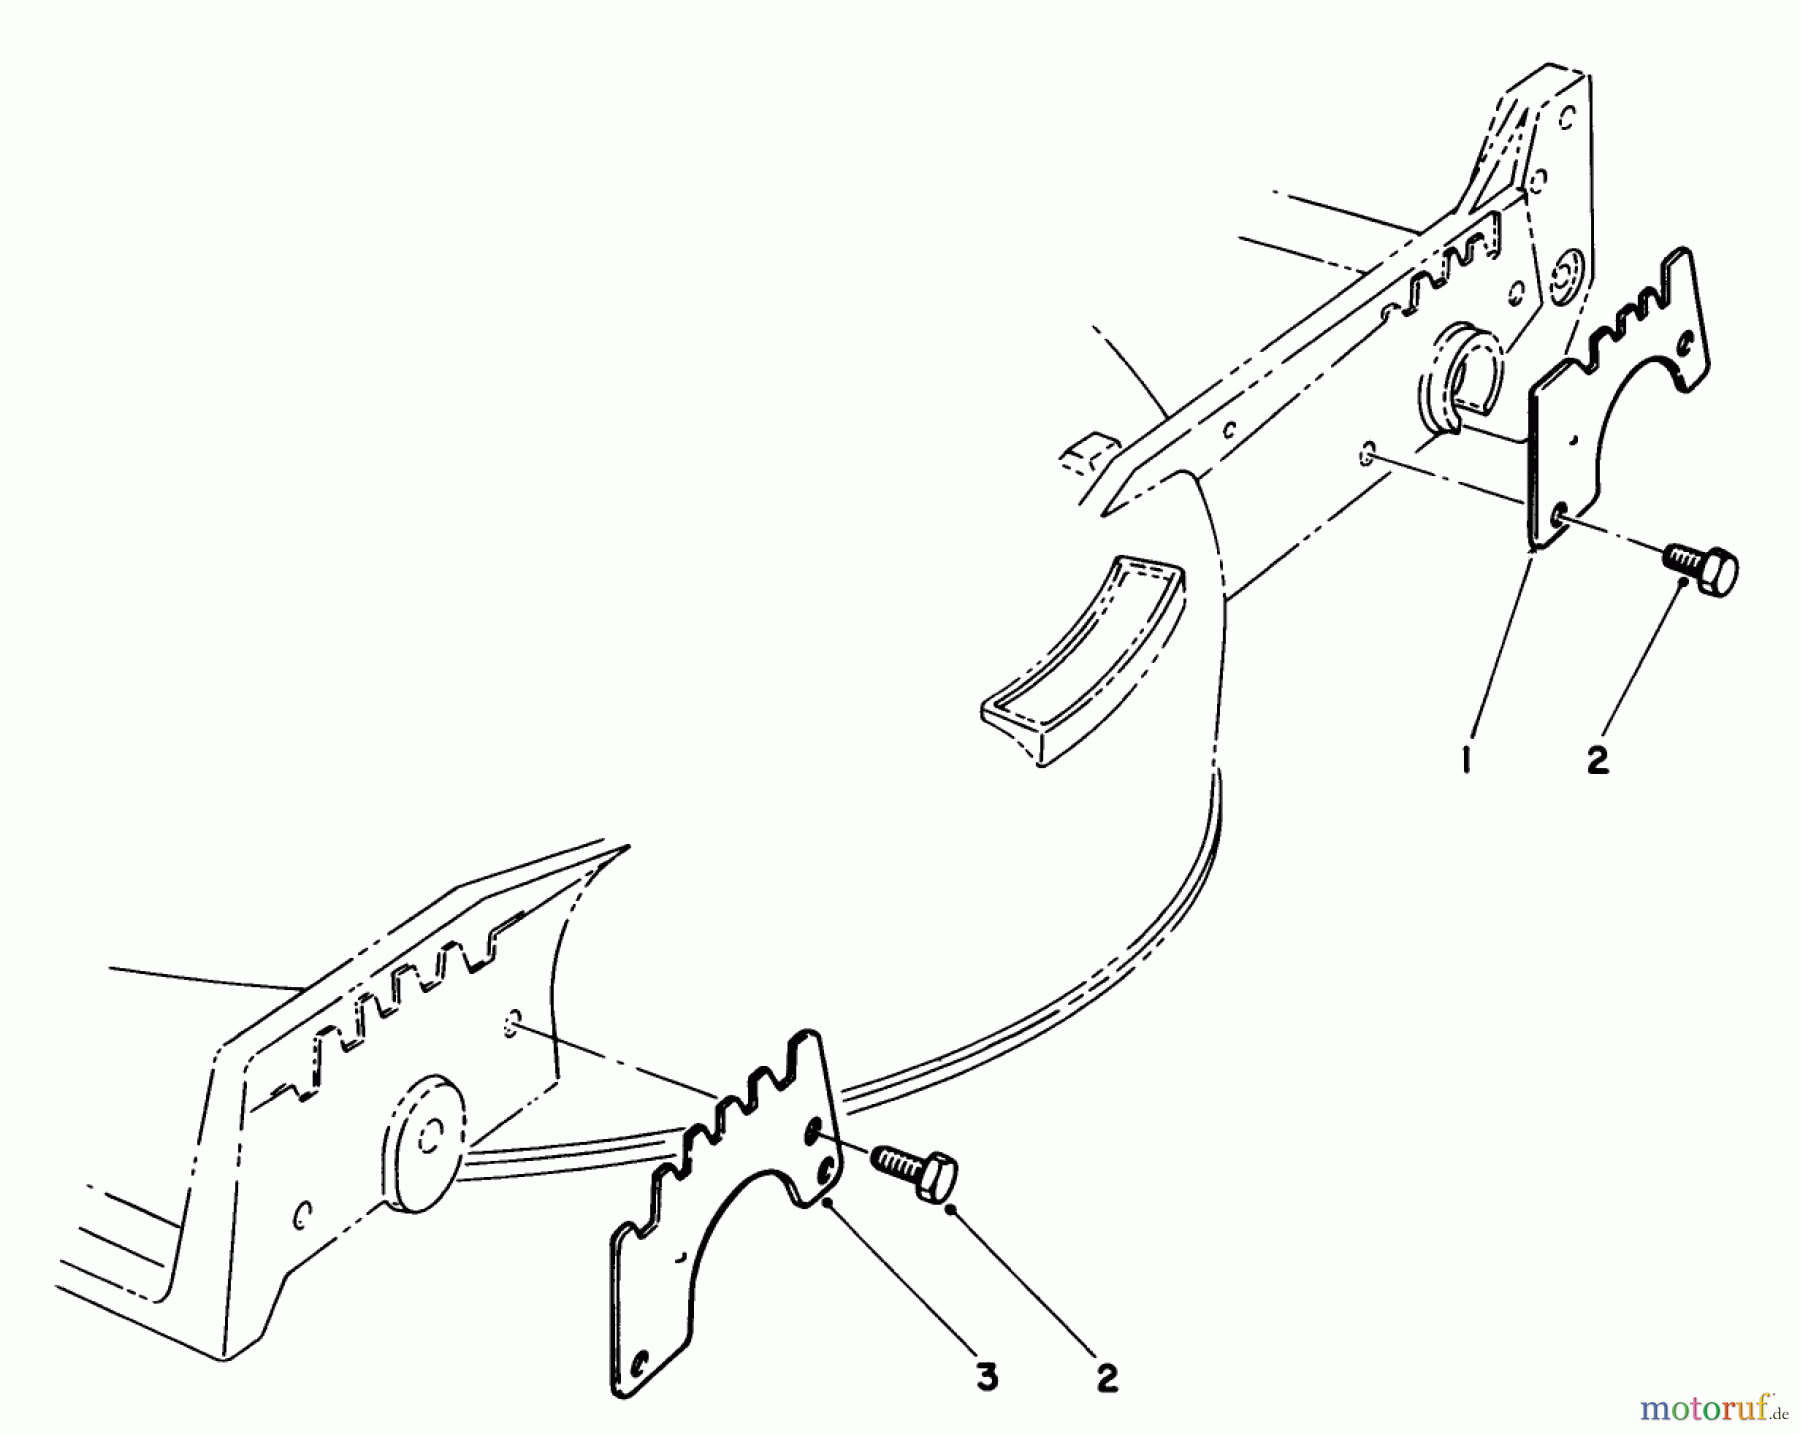  Toro Neu Mowers, Walk-Behind Seite 1 20692 - Toro Lawnmower, 1987 (7000001-7999999) WEAR PLATE KIT NO. 49-4080 (OPTIONAL)